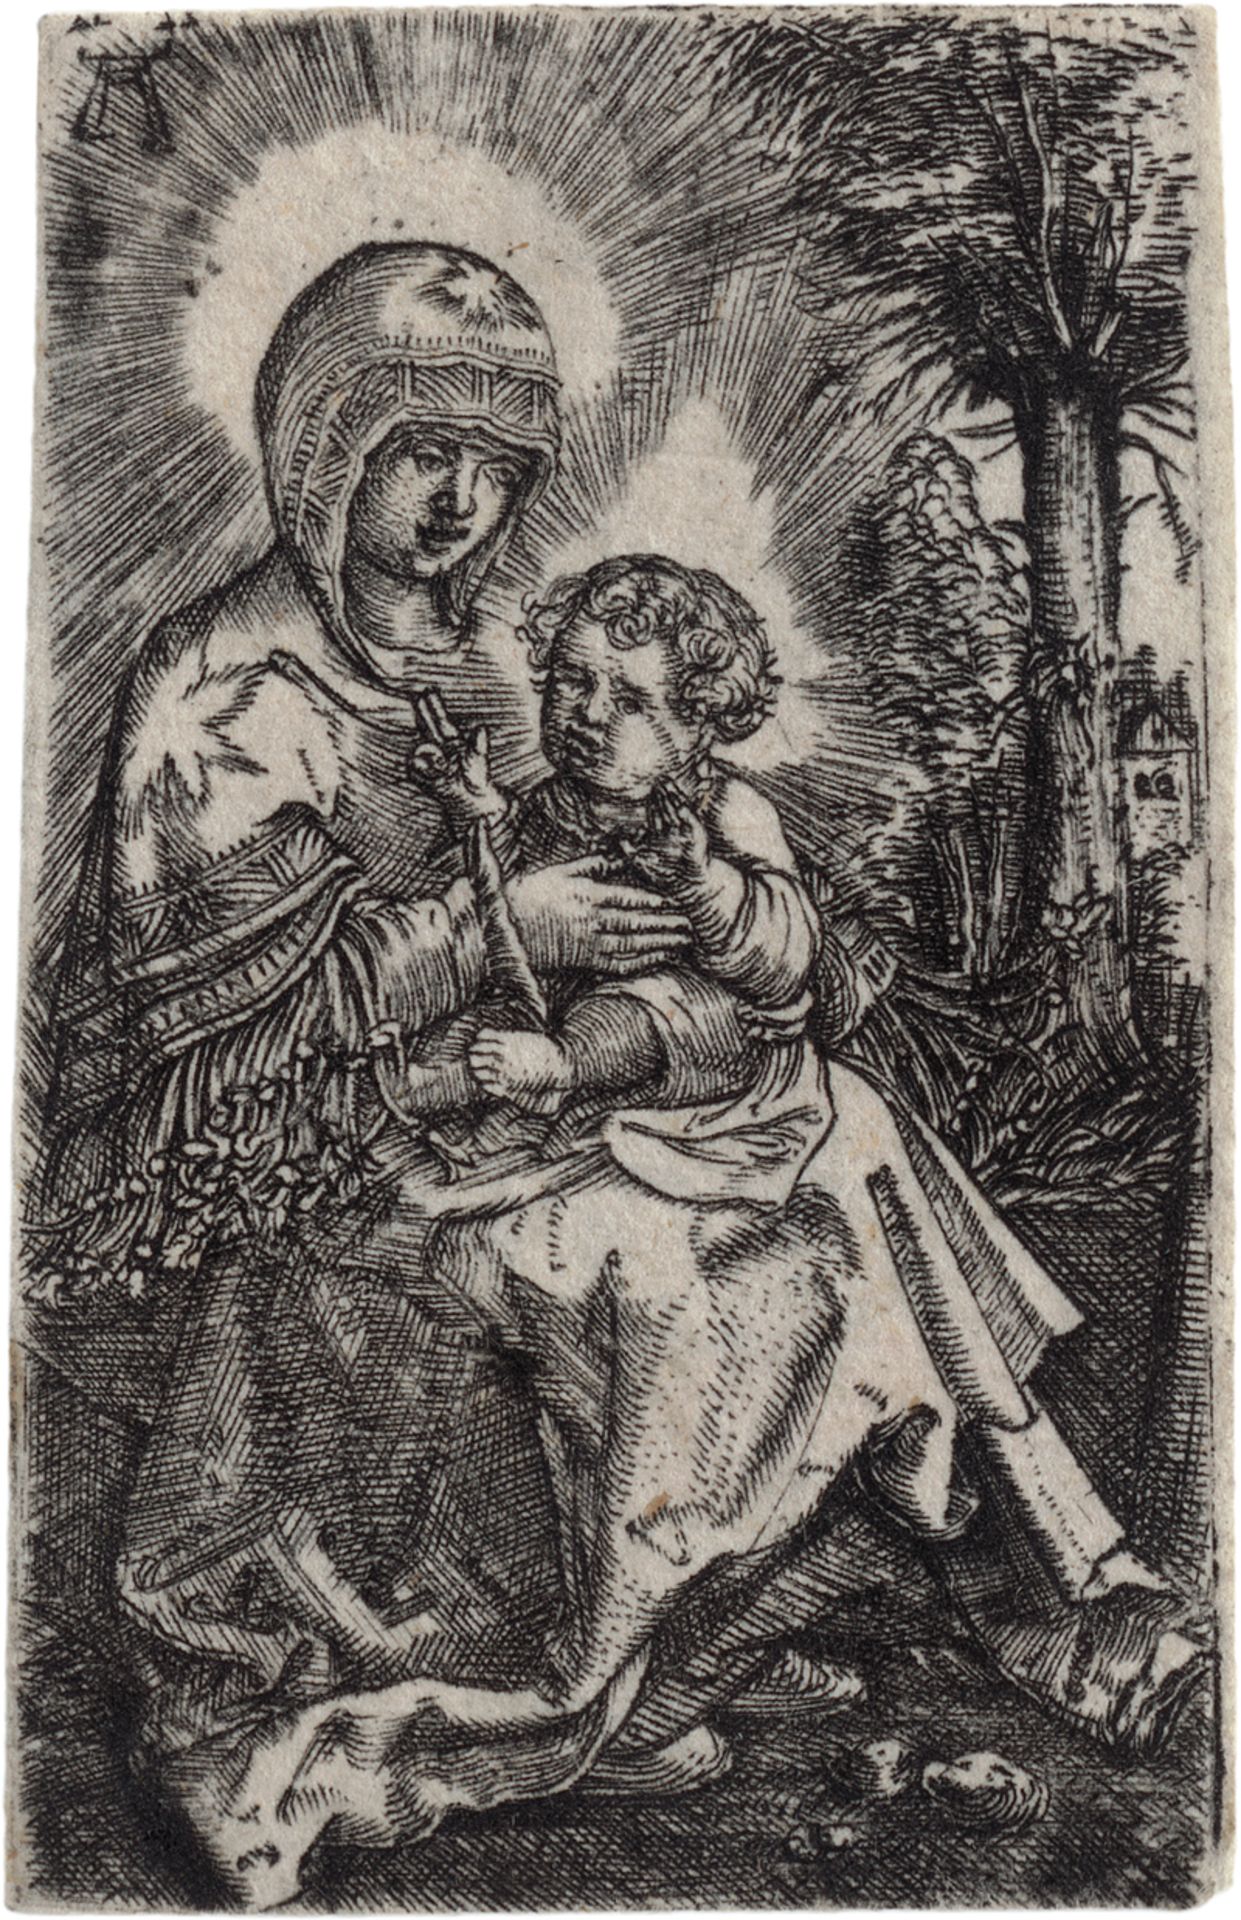 Altdorfer, Albrecht: Die "schöne Maria" in einer Landschaft